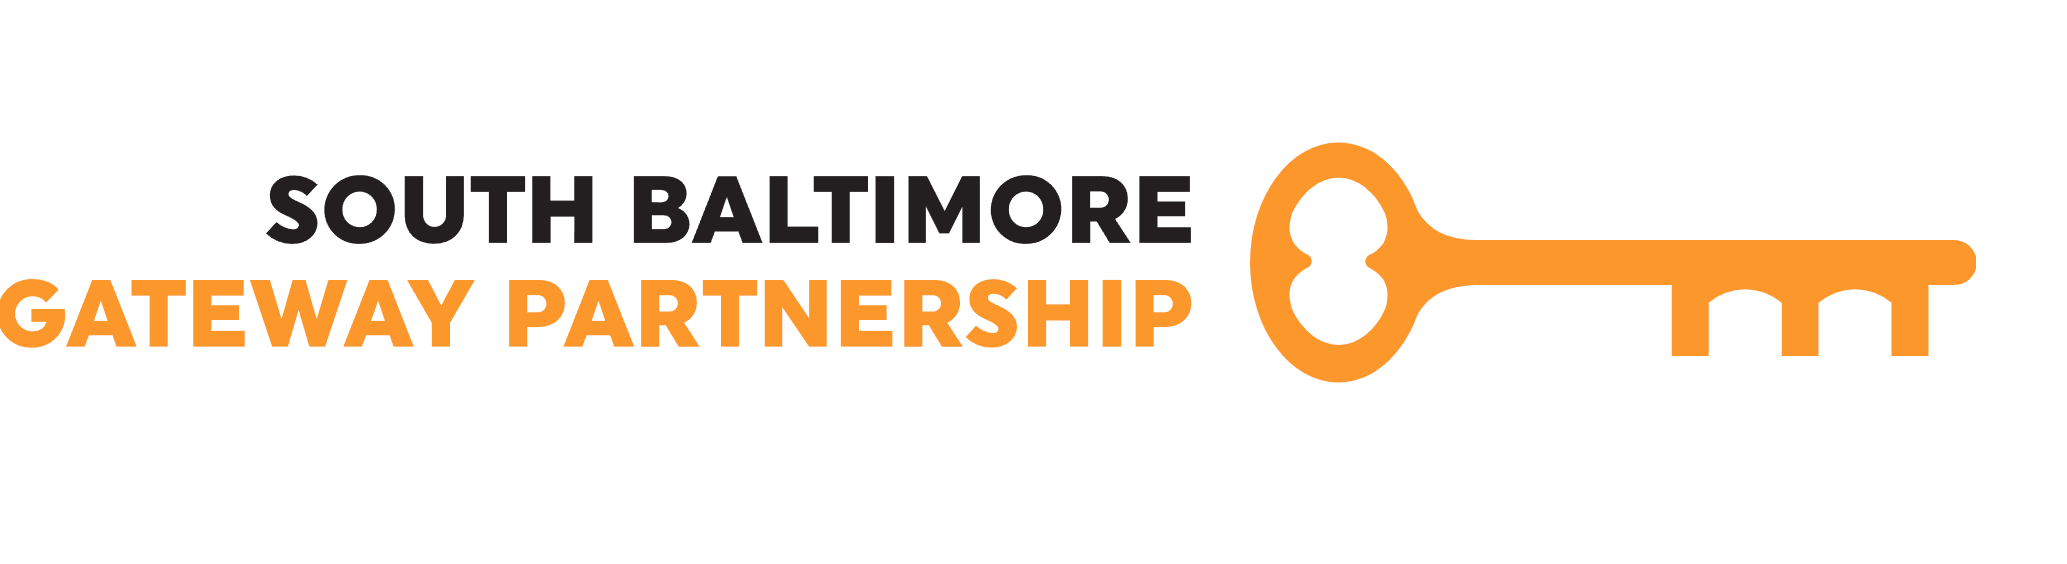 south_baltimore_gateway_partnerships.png